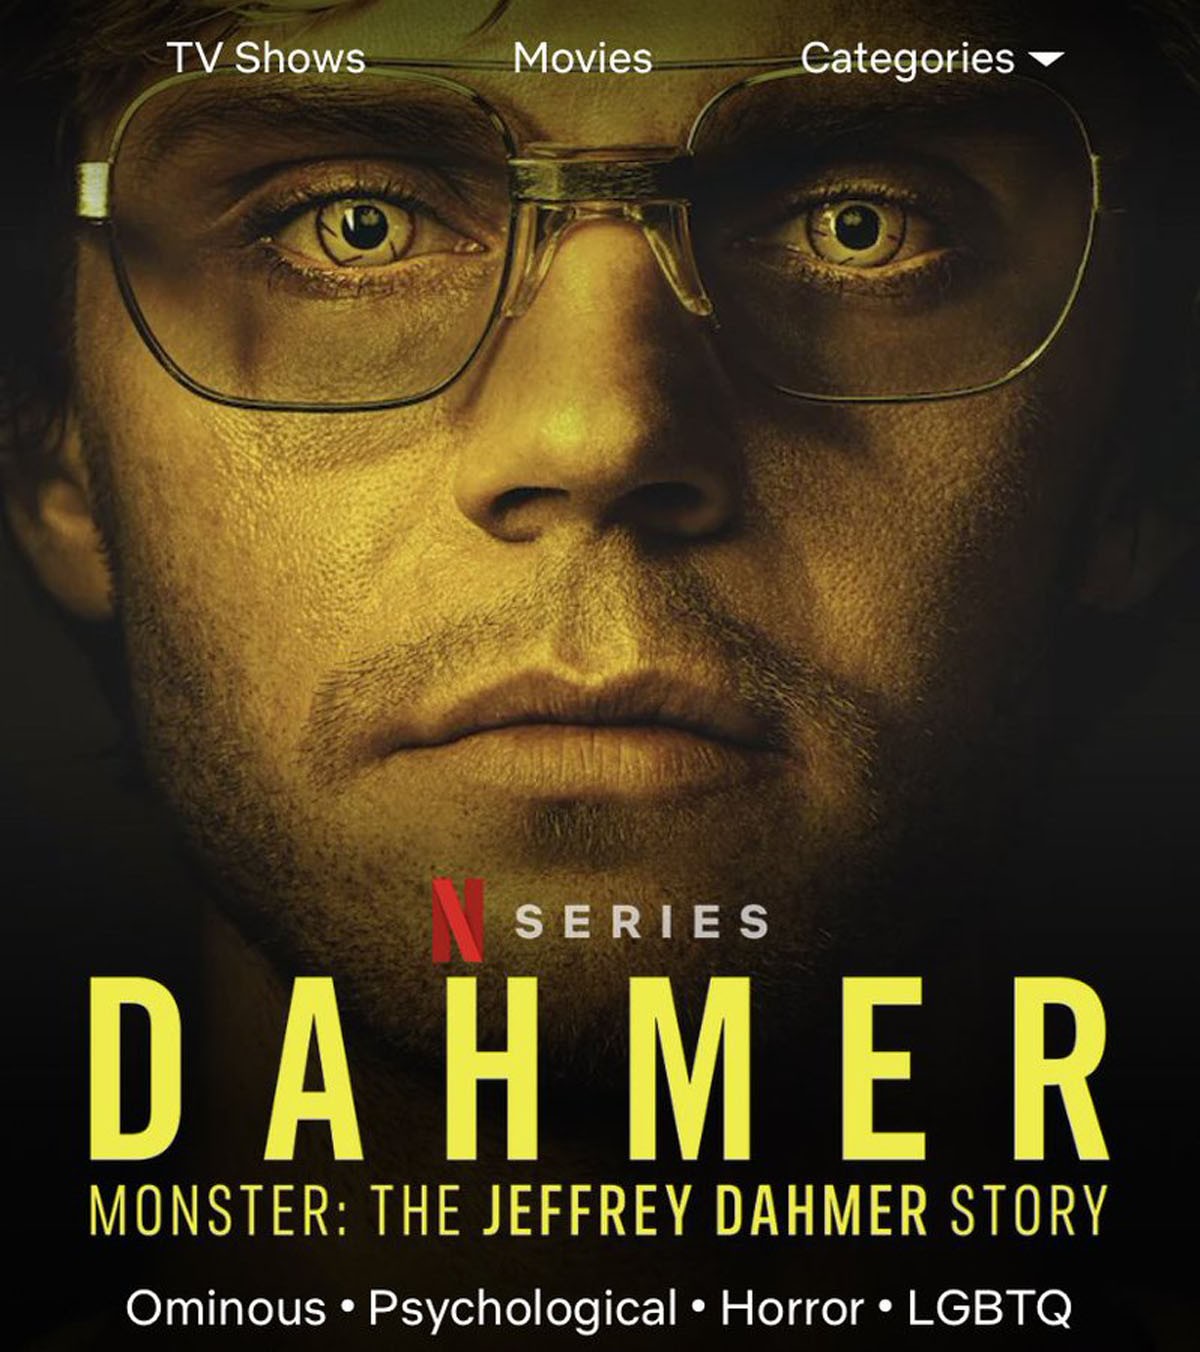 Evan Peters Dahmer series 3